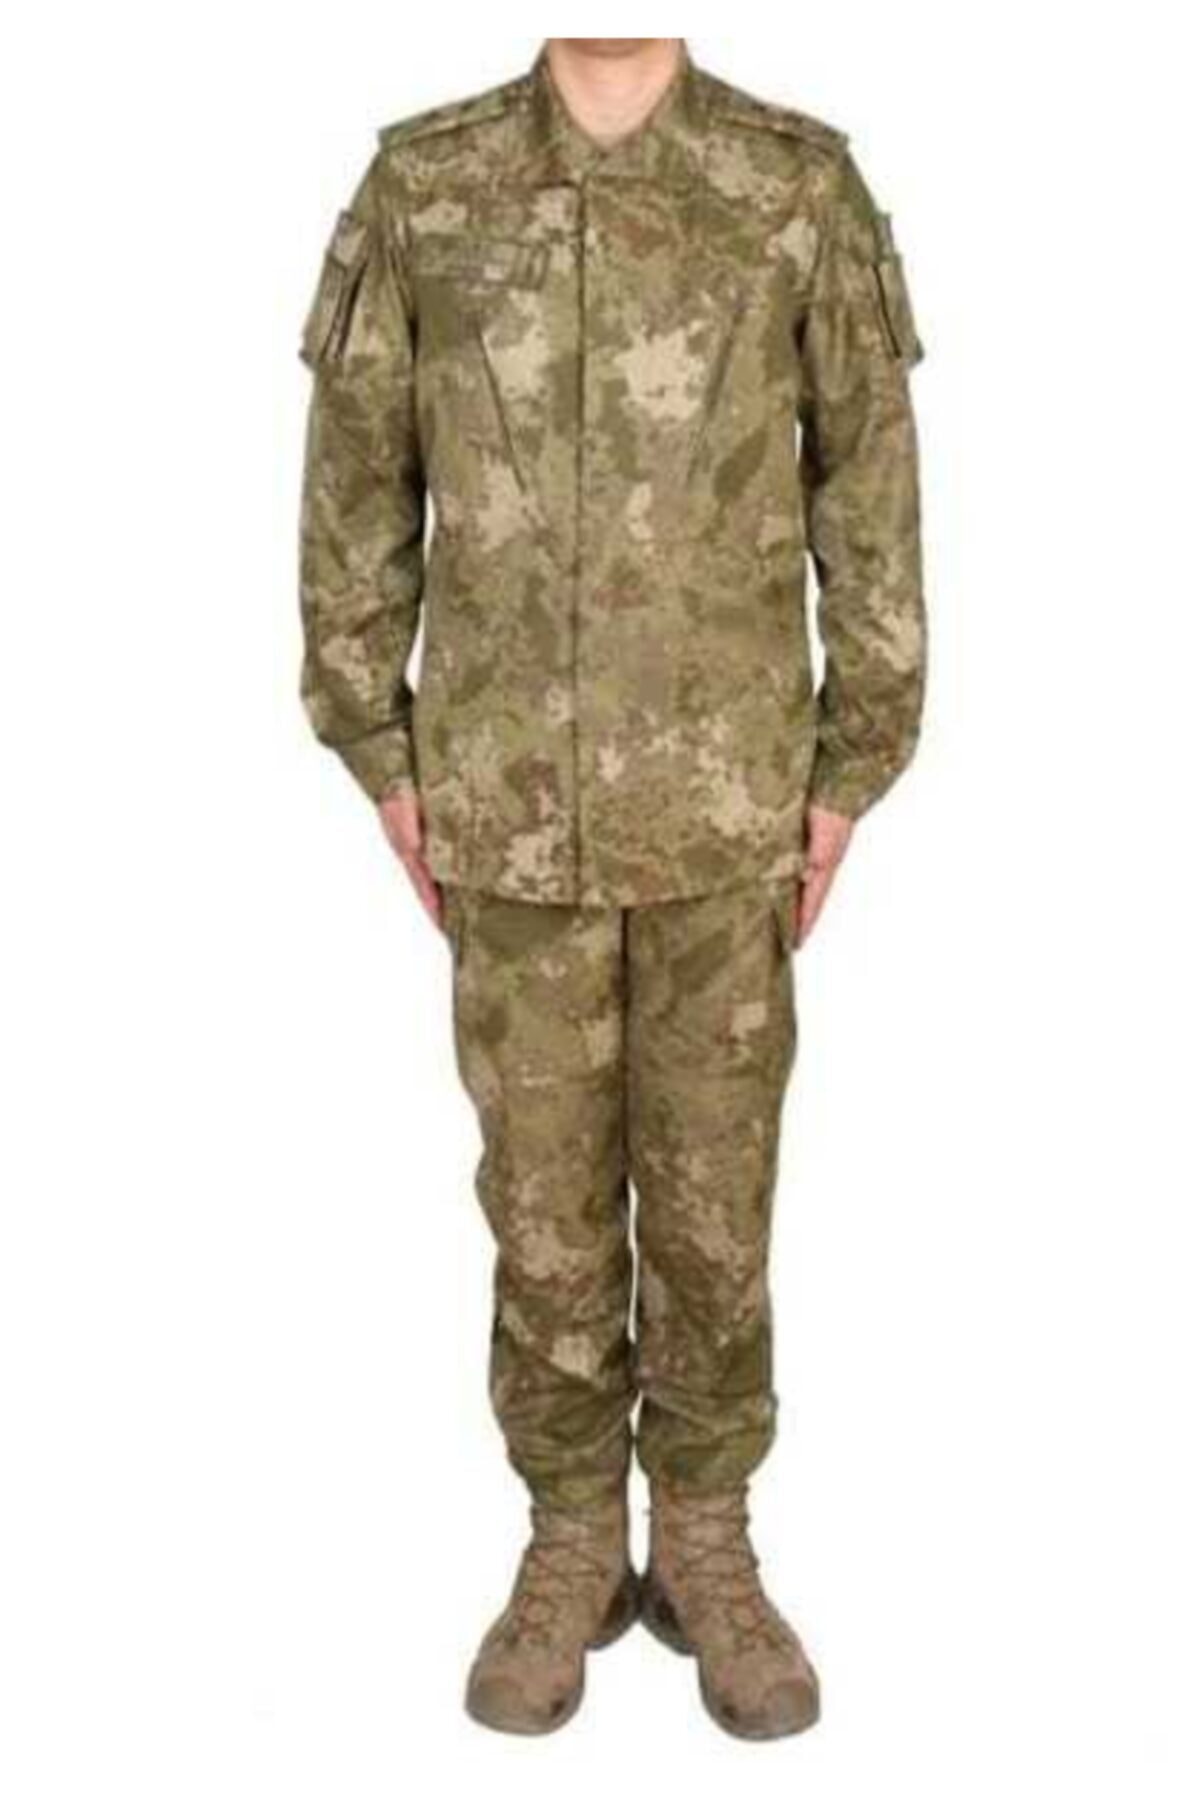 Silyon Askeri Giyim Yeni Tip Tsk Kamuflaj Takımı Pantolon Ve Gömlek Yeni Piyade Pantolon - Gömlek Takımı